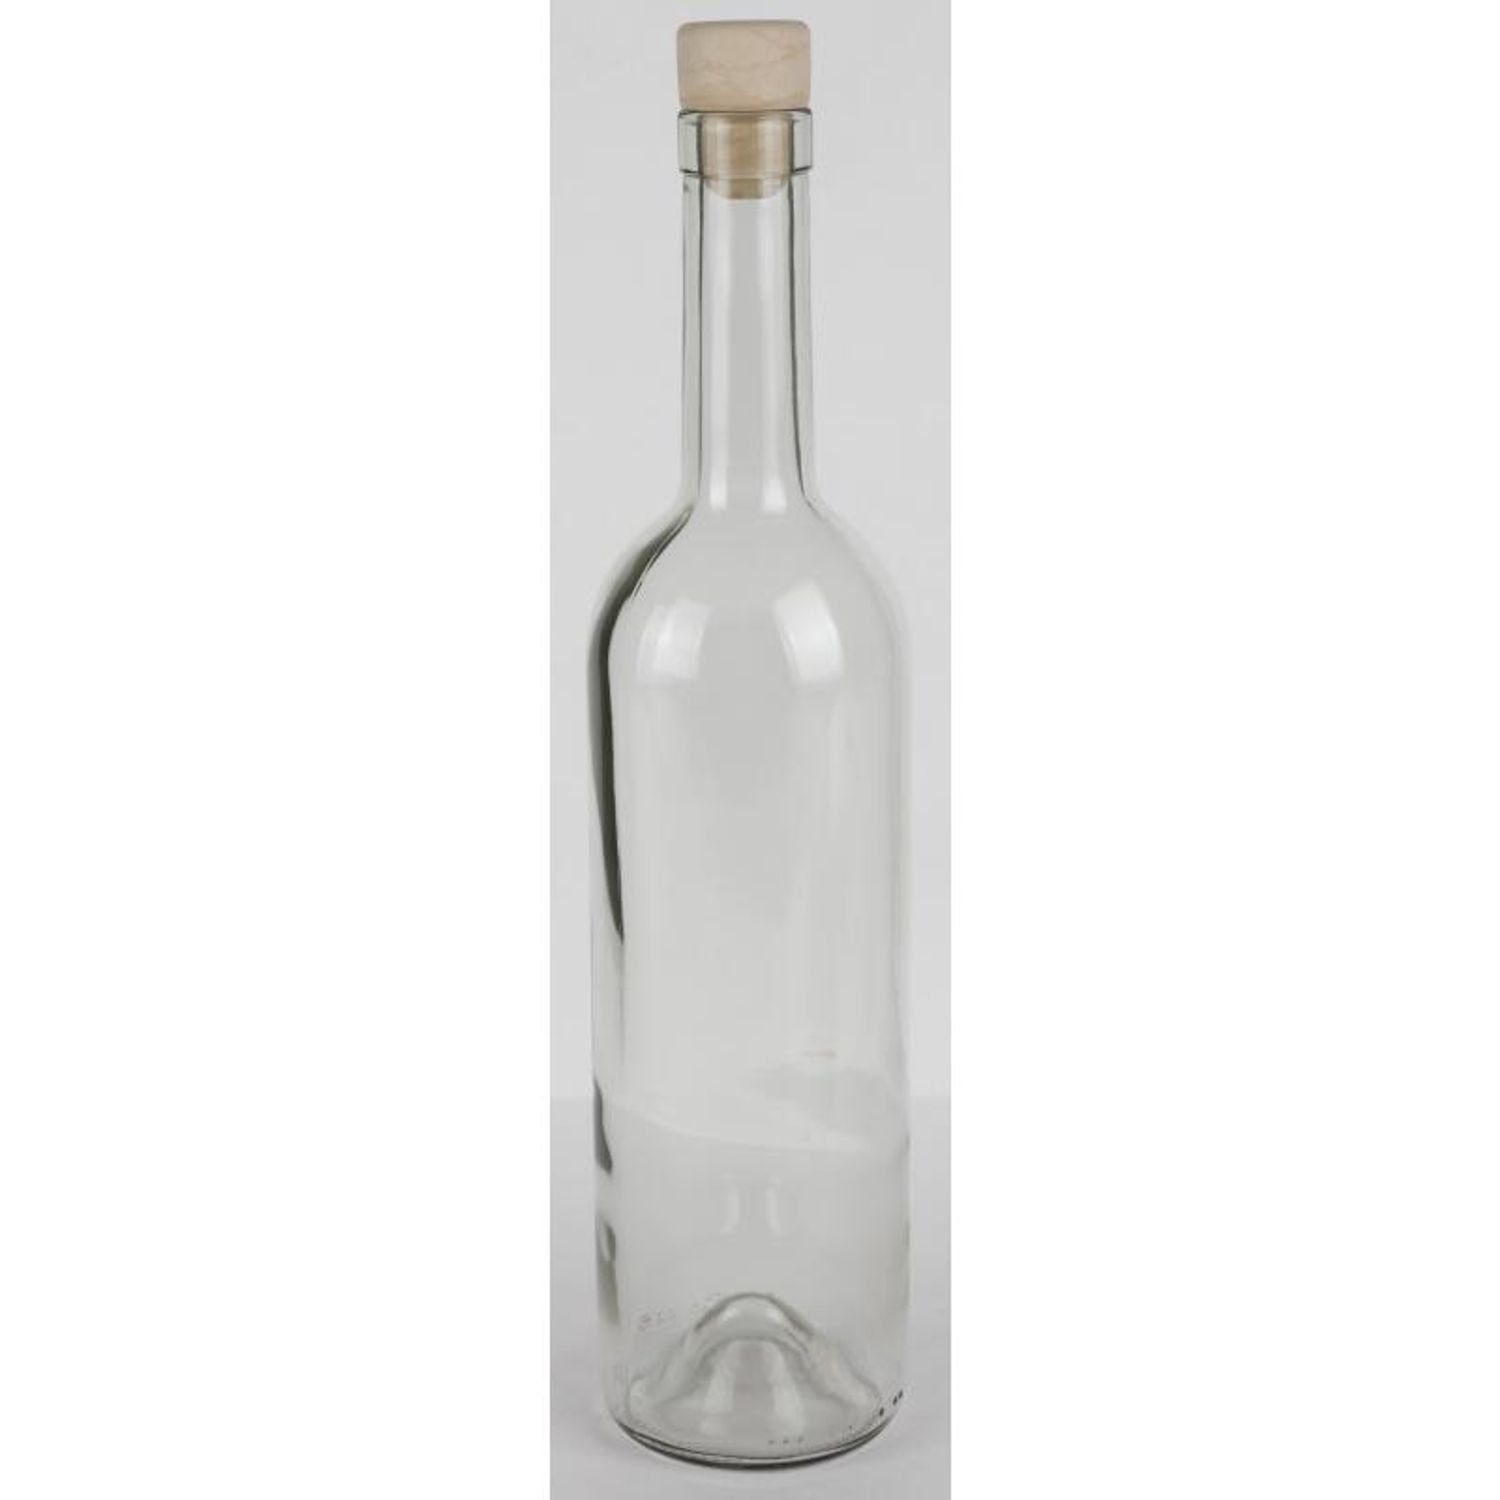 Omega Saft Trinken Küc Etikett Korkenverschluss 15x Wasser 0,75L Spolka Glasflasche Trinkflasche Jawna